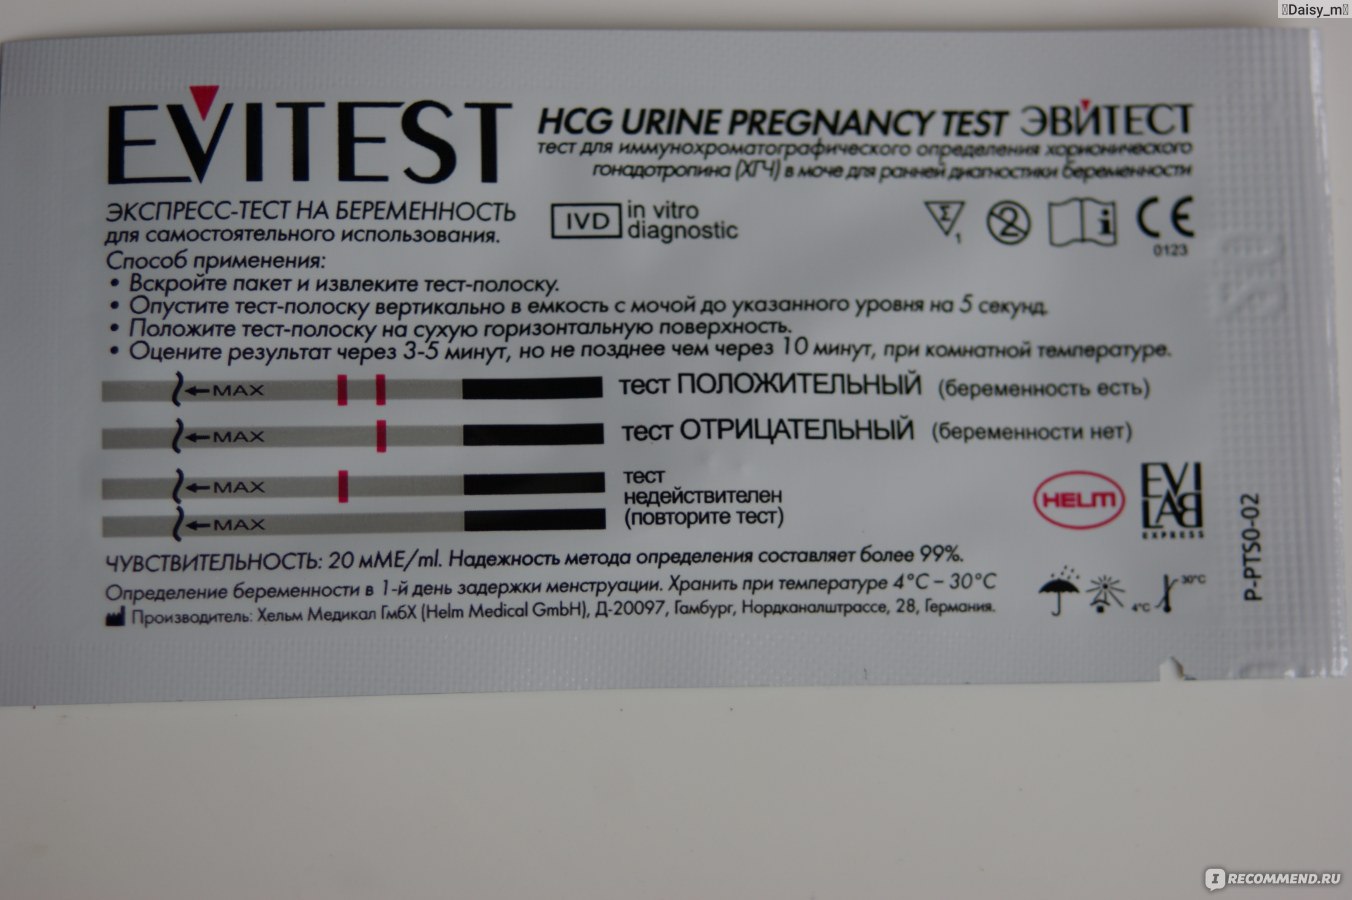 Чувствительность теста 10 мме мл. Чувствительность тестов на беременность 20 ММЕ/мл. Эвитест 10 ММЕ/мл. Тест на беременность эвитест чувствительность. Тест чувствительность 10 ММЕ/мл тест на беременность.